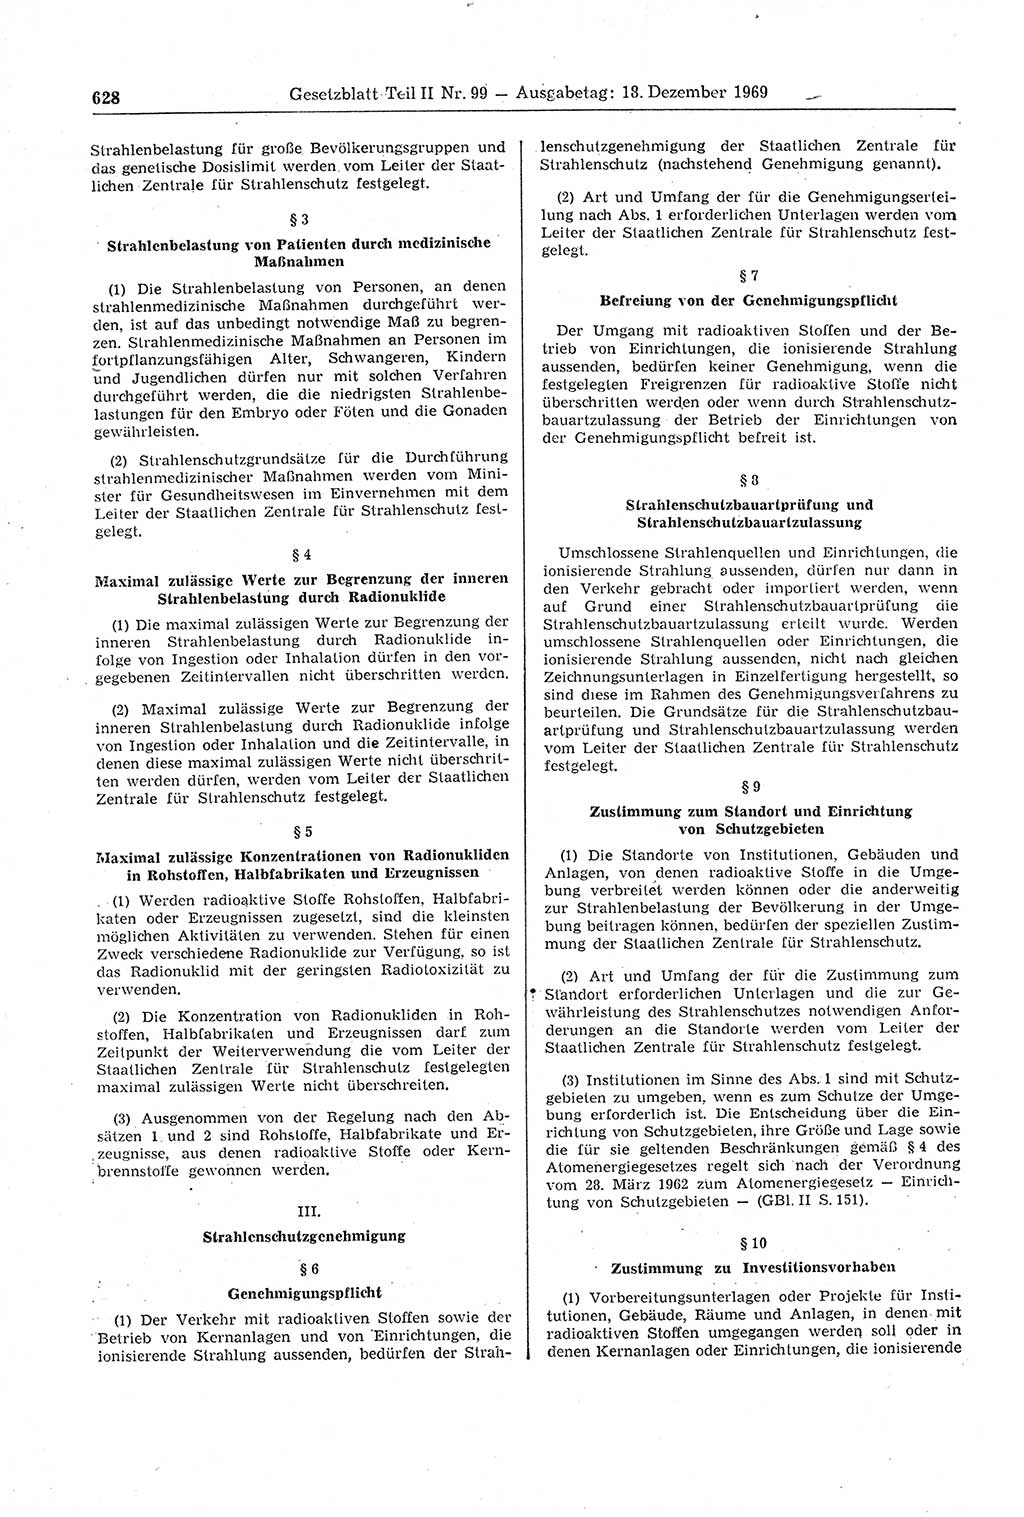 Gesetzblatt (GBl.) der Deutschen Demokratischen Republik (DDR) Teil ⅠⅠ 1969, Seite 628 (GBl. DDR ⅠⅠ 1969, S. 628)